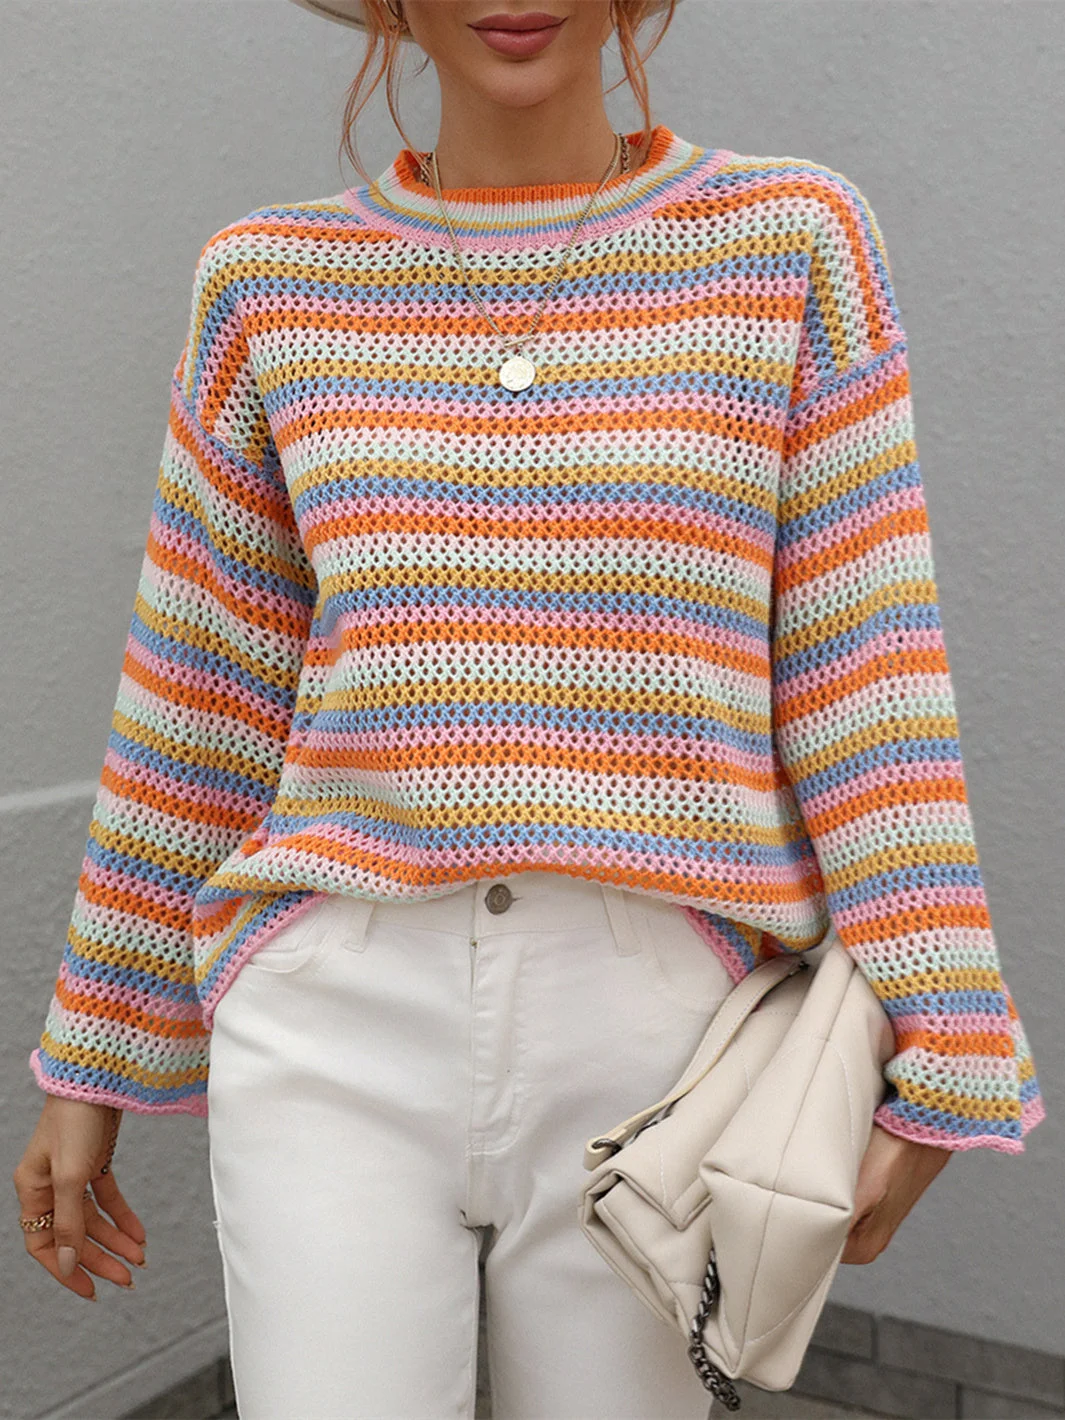 Women's Scoop Neck Long Sleeve Striped Top Knit Sweater